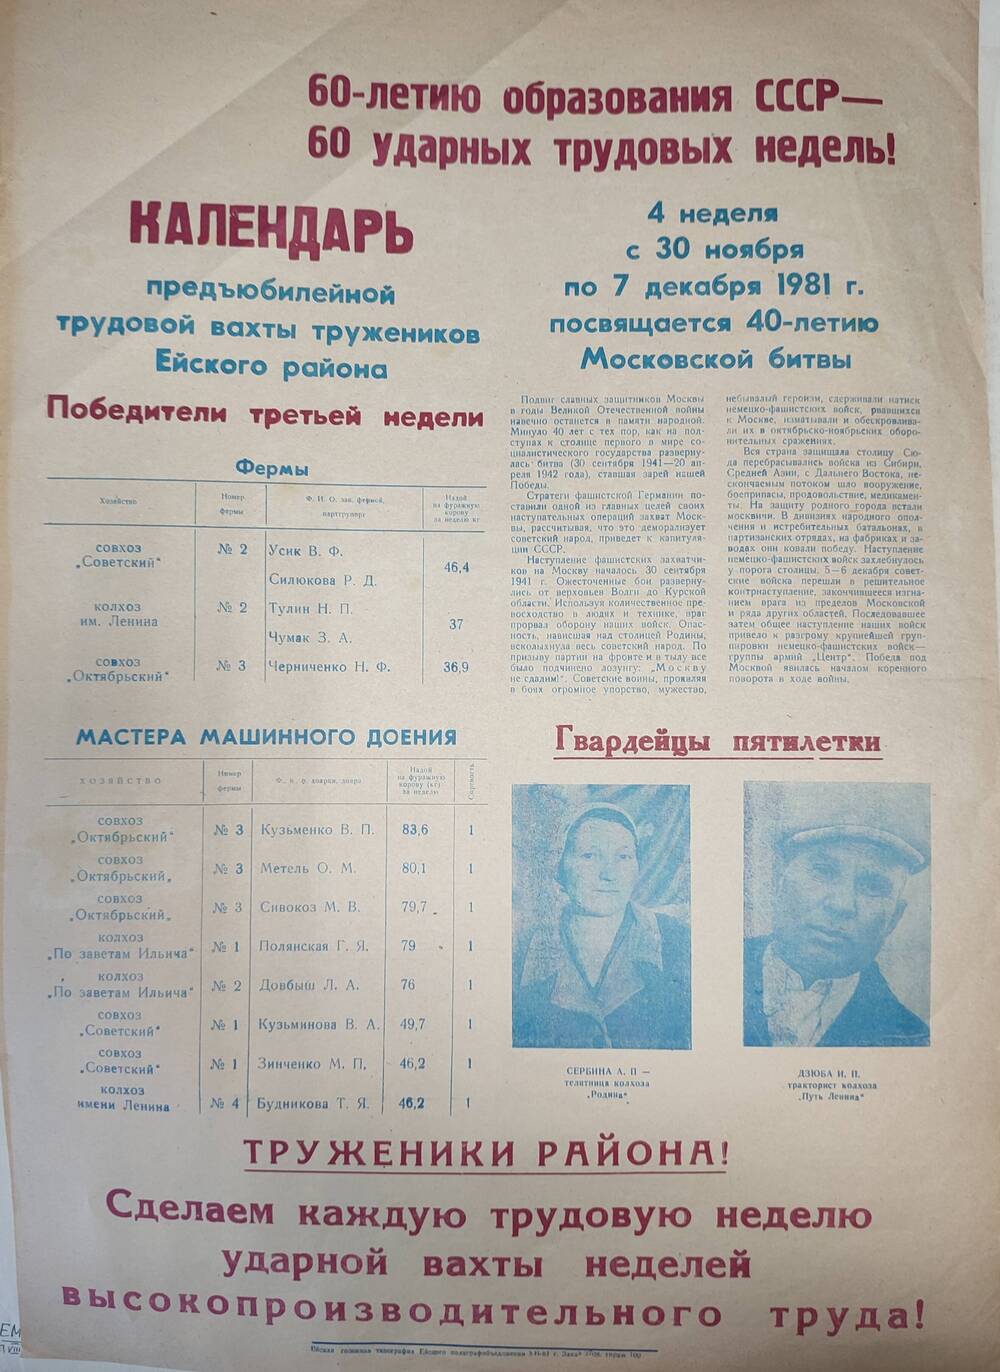 Лист: Календарь предъюбилейной трудовой вахты тружеников Ейского района 4 неделя с 30 ноября по 7 декабря 1981 г.